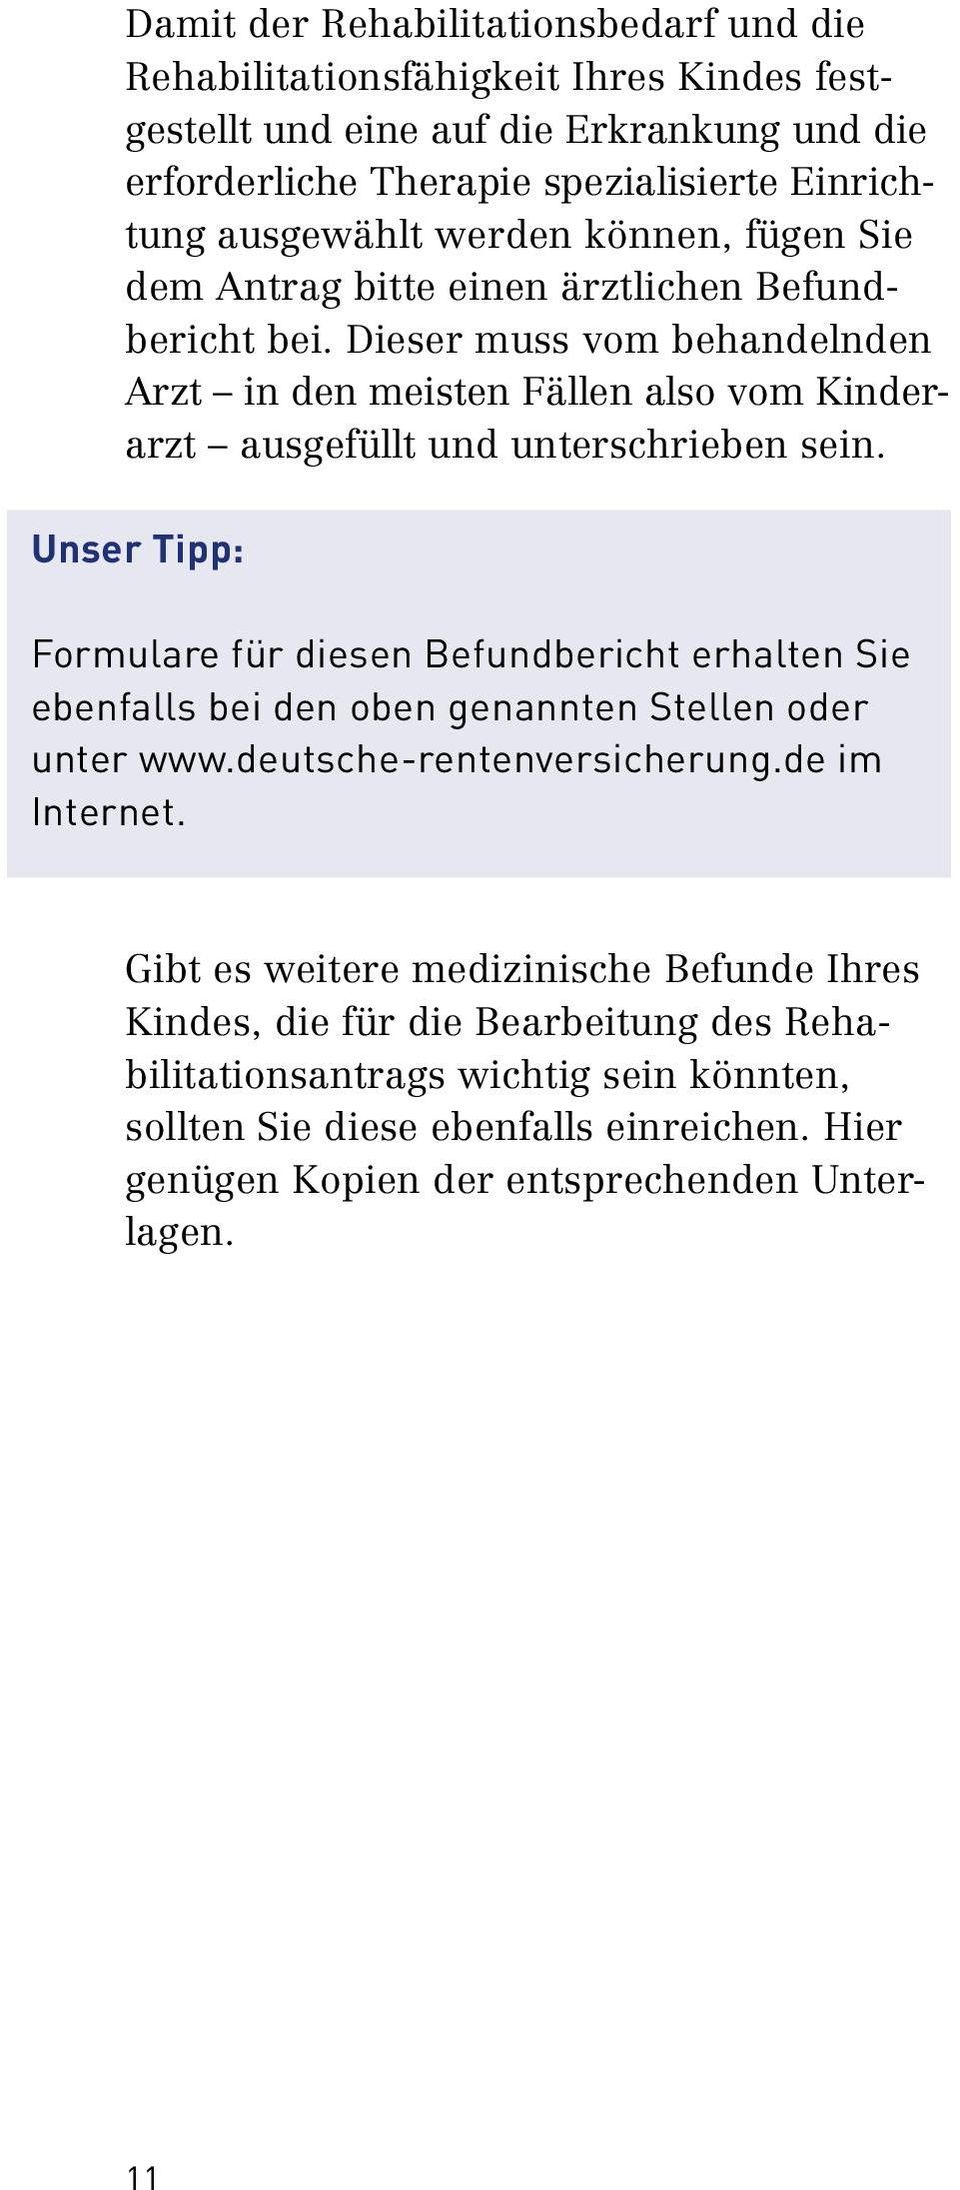 Unser Tipp: Formulare für diesen Befundbericht erhalten Sie ebenfalls bei den oben genannten Stellen oder unter www.deutsche rentenversicherung.de im Internet.